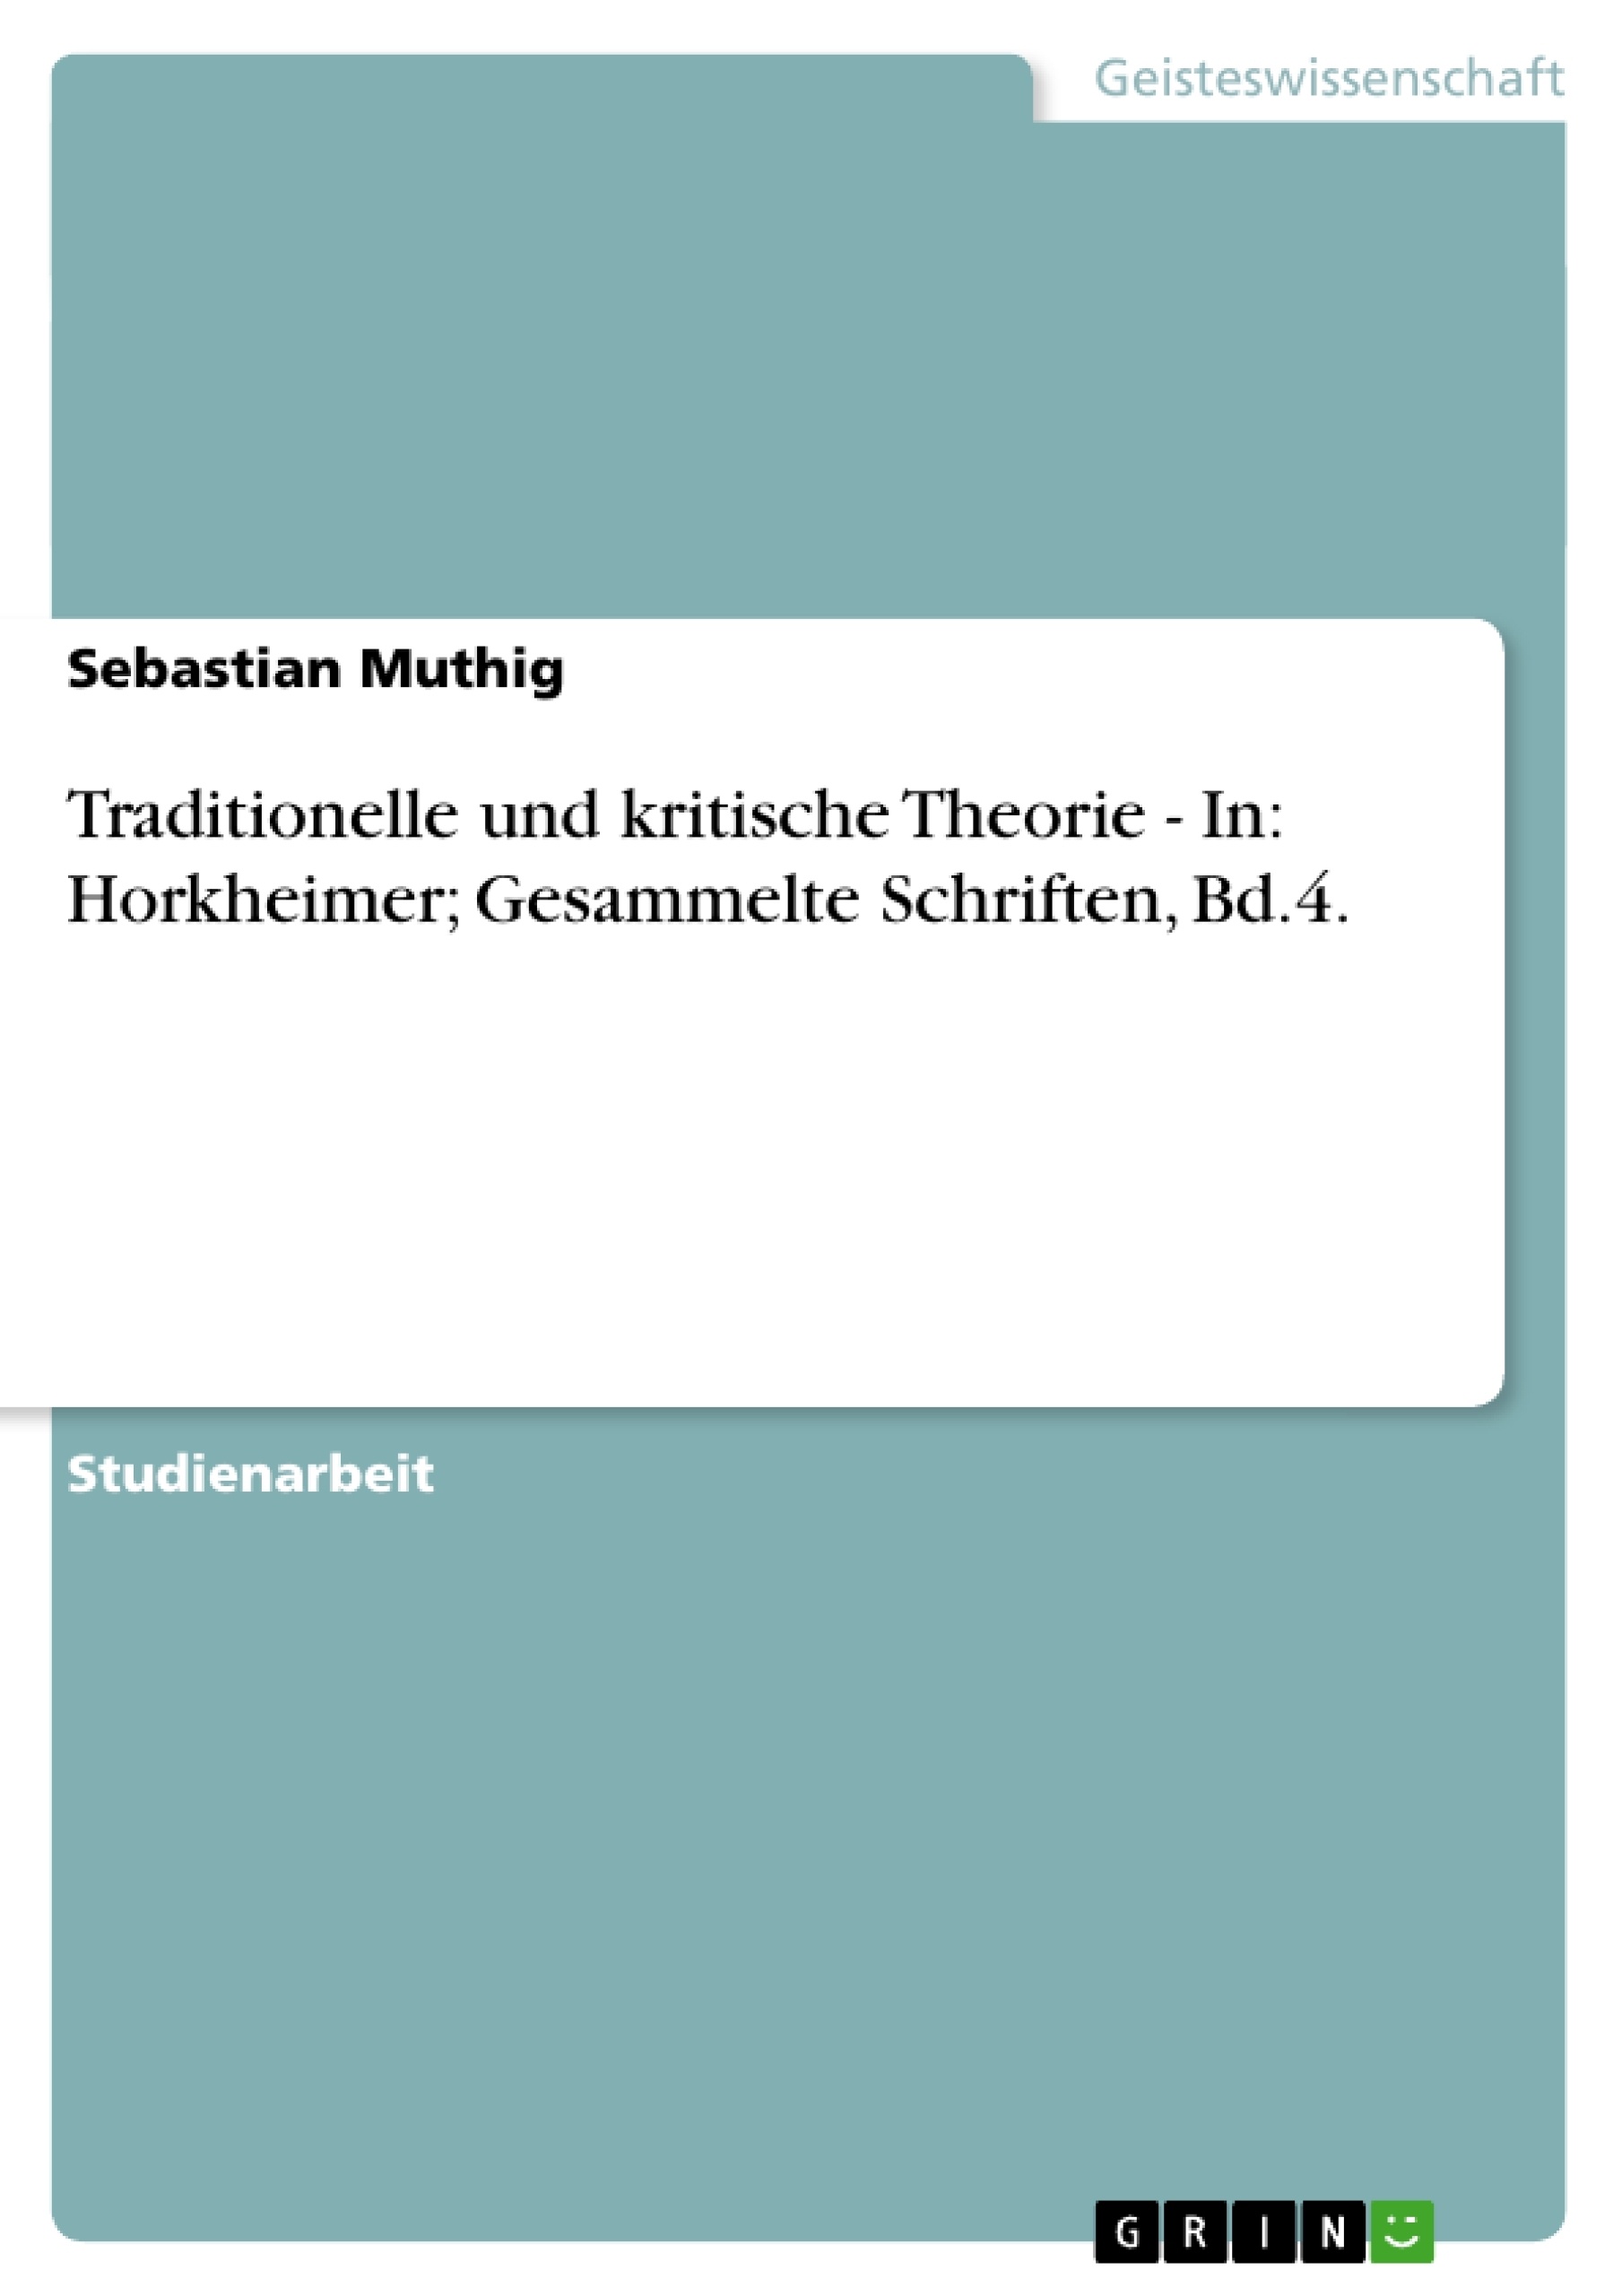 Titre: Traditionelle und kritische Theorie - In: Horkheimer; Gesammelte Schriften, Bd.4.